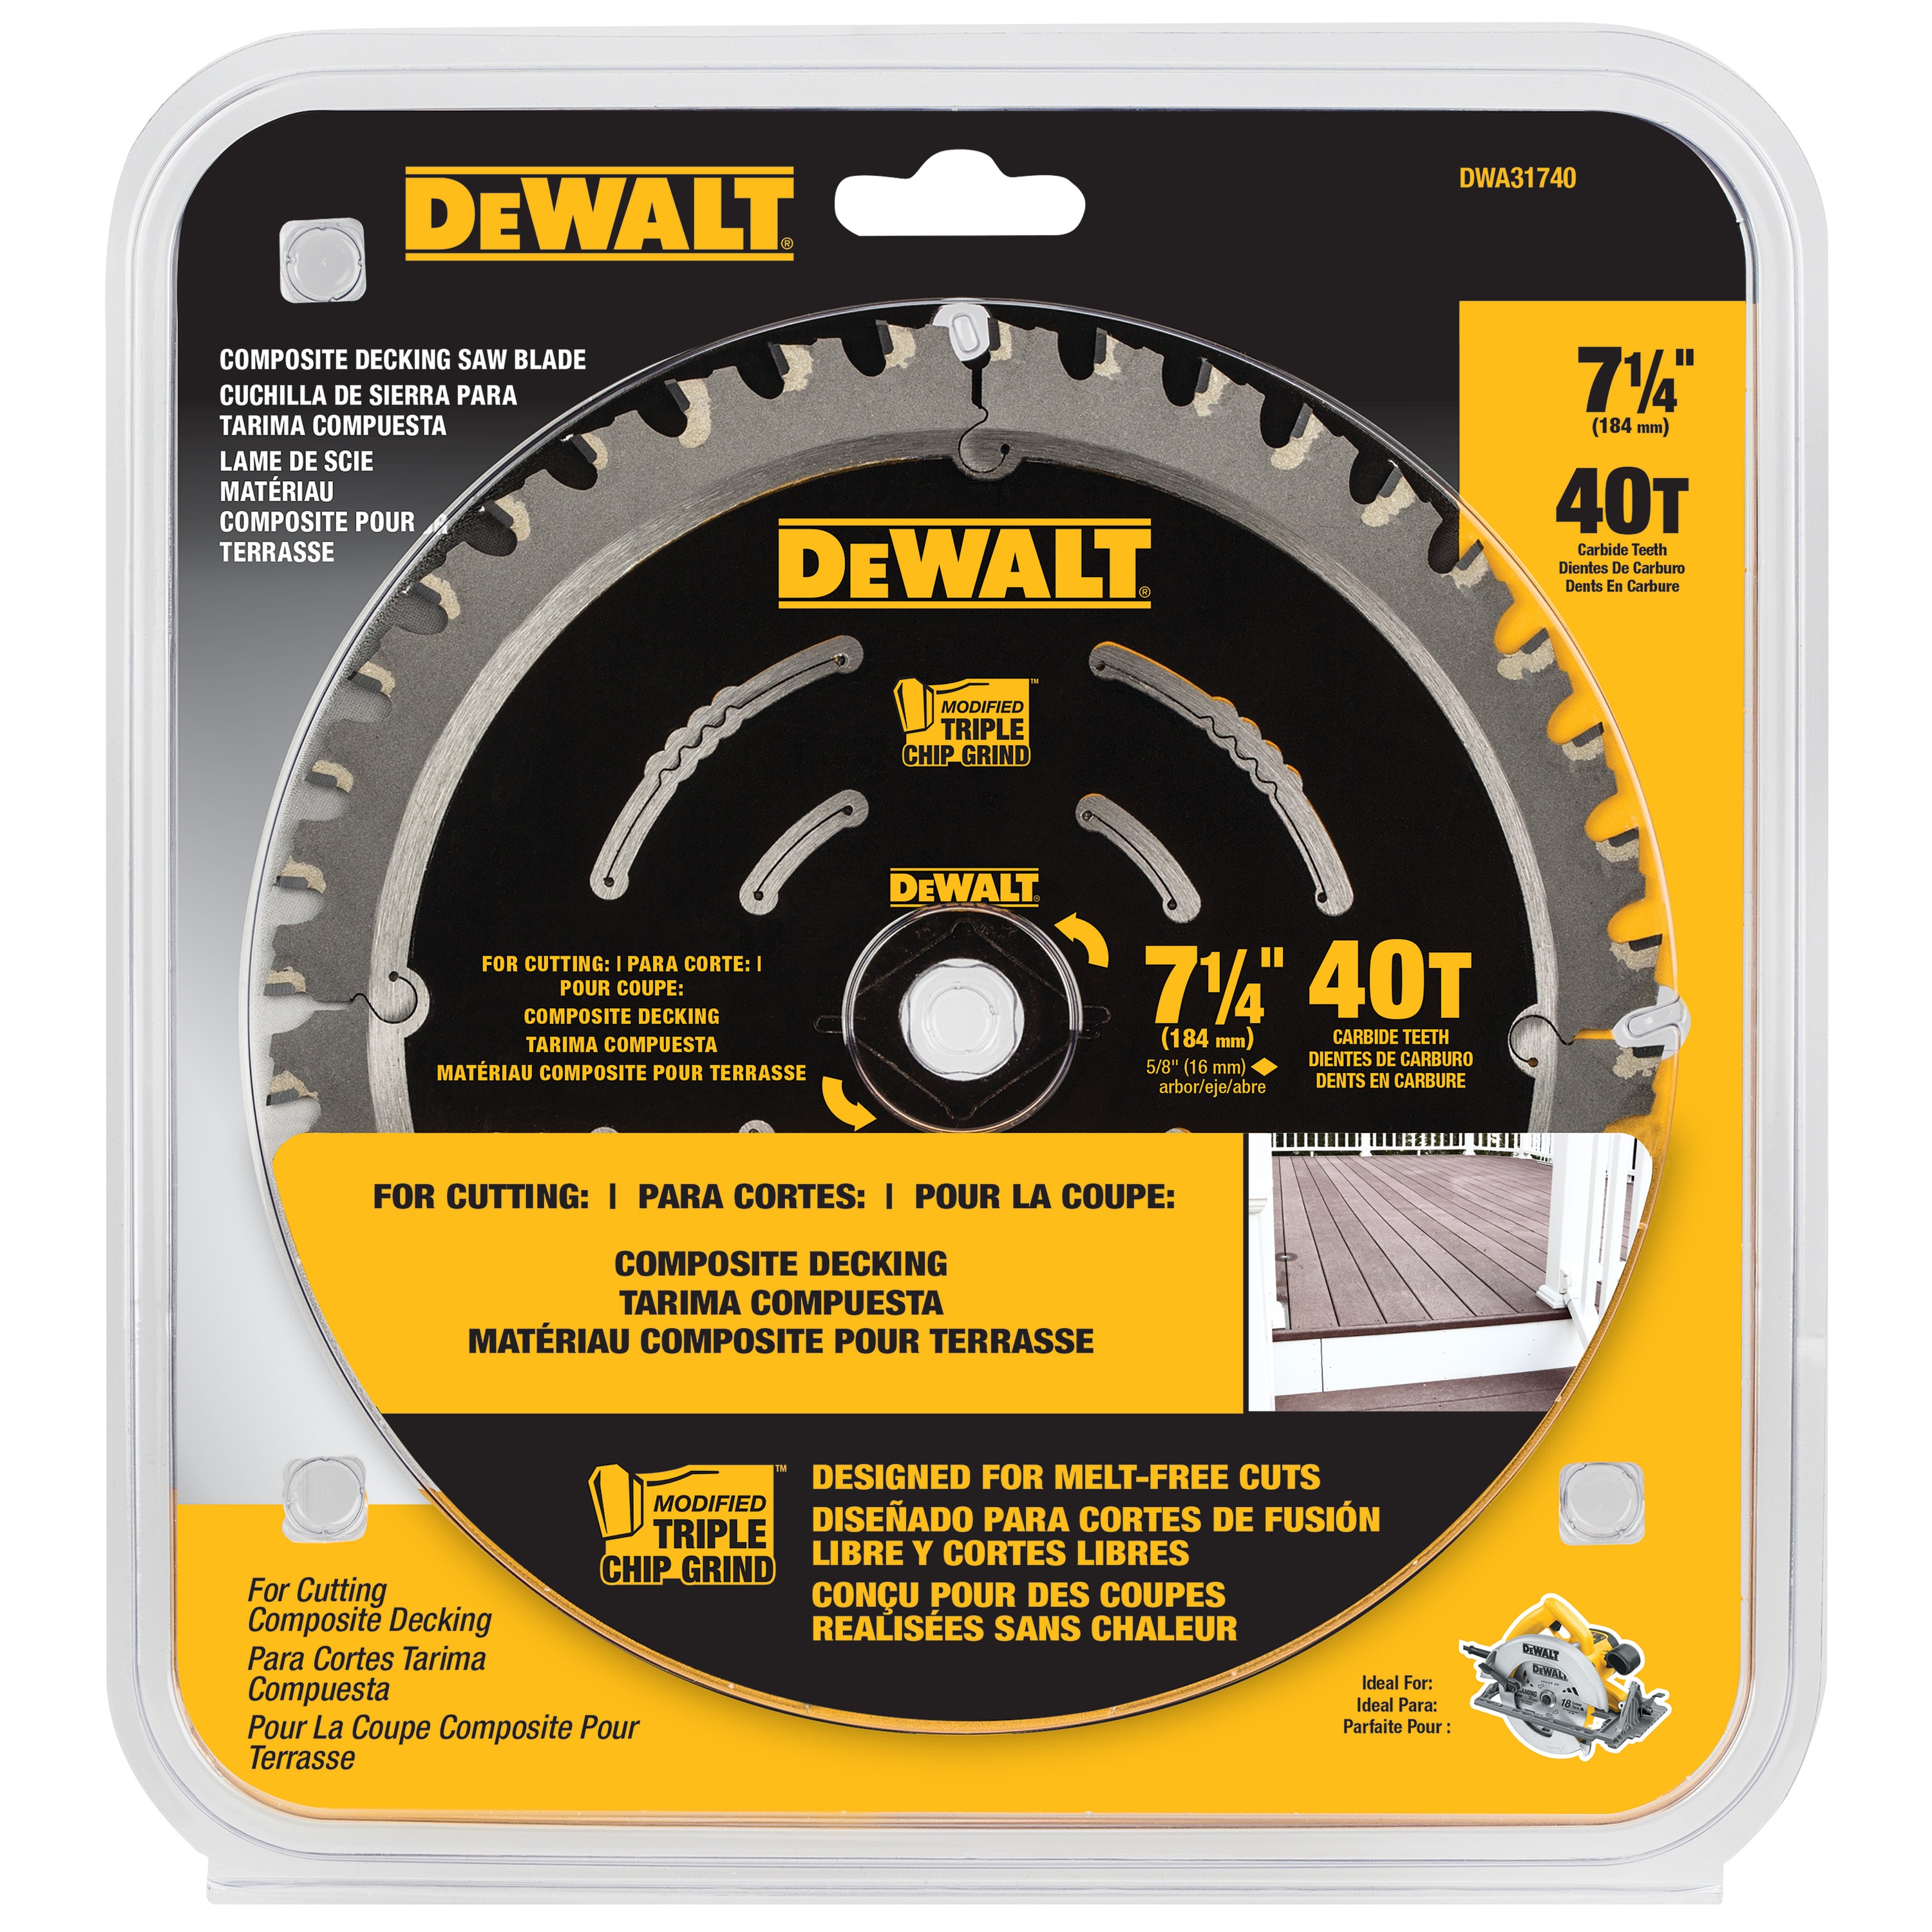 DEWALT - 7 14 40T Composite Decking Saw Blade - DWA31740